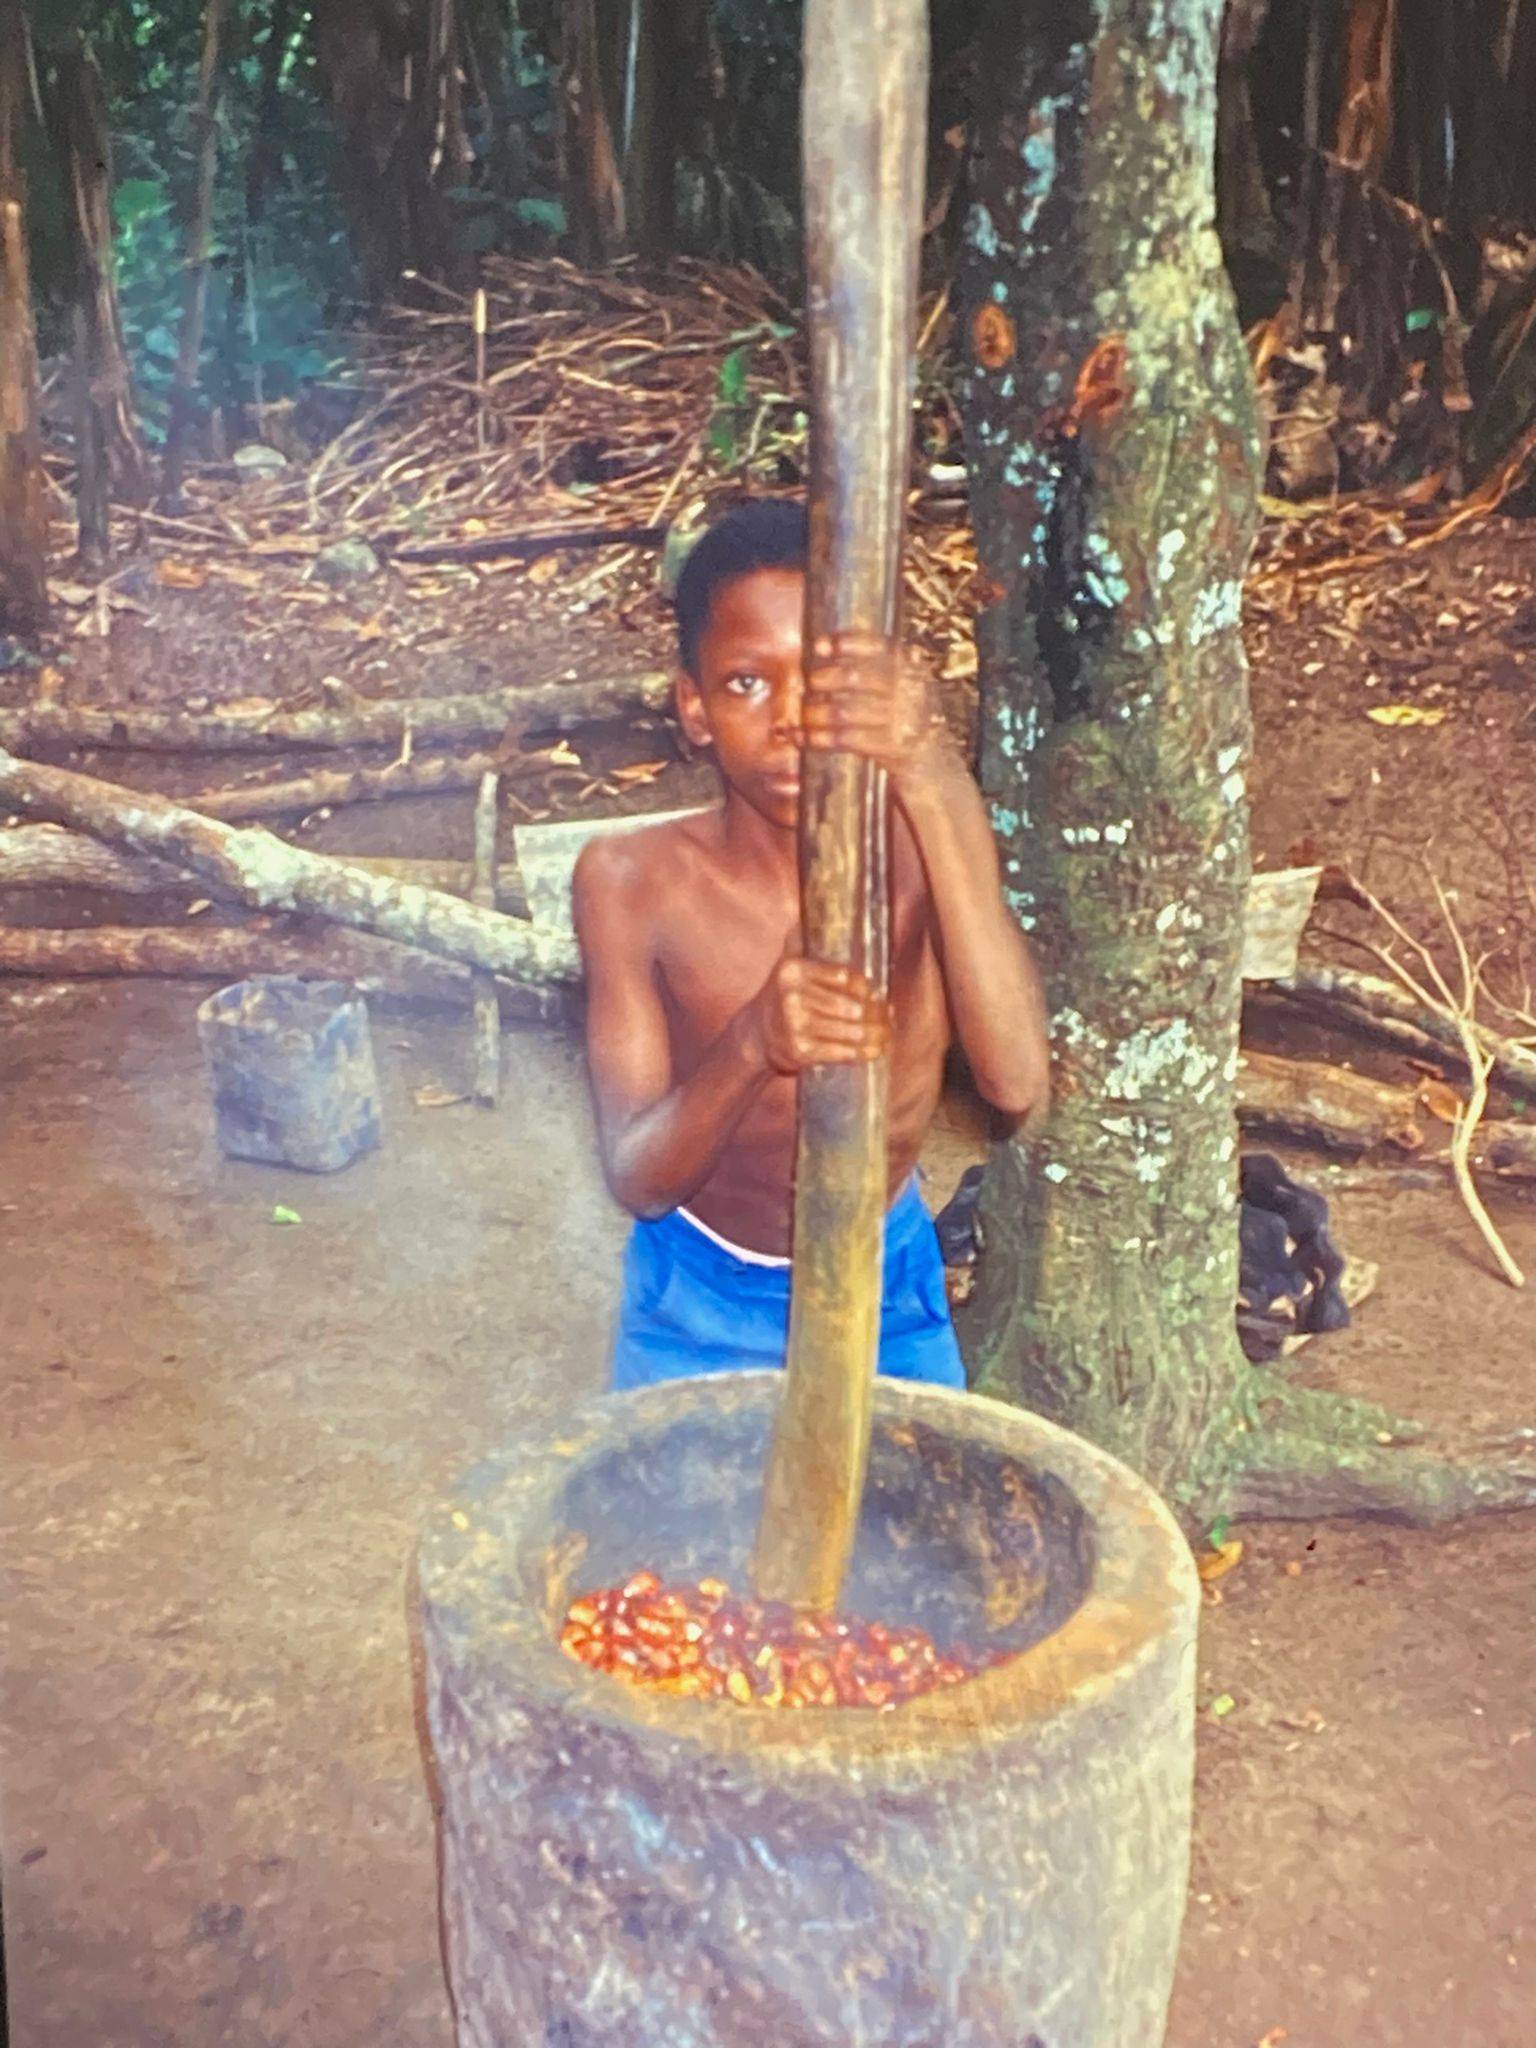 Afrikanischer Junge in kurzer blauer Hose, der vor einem großen Betonmörser steht und mit einem Holzprügel gekochtes Palmfruchtfleisch zu Brei verarbeitet.